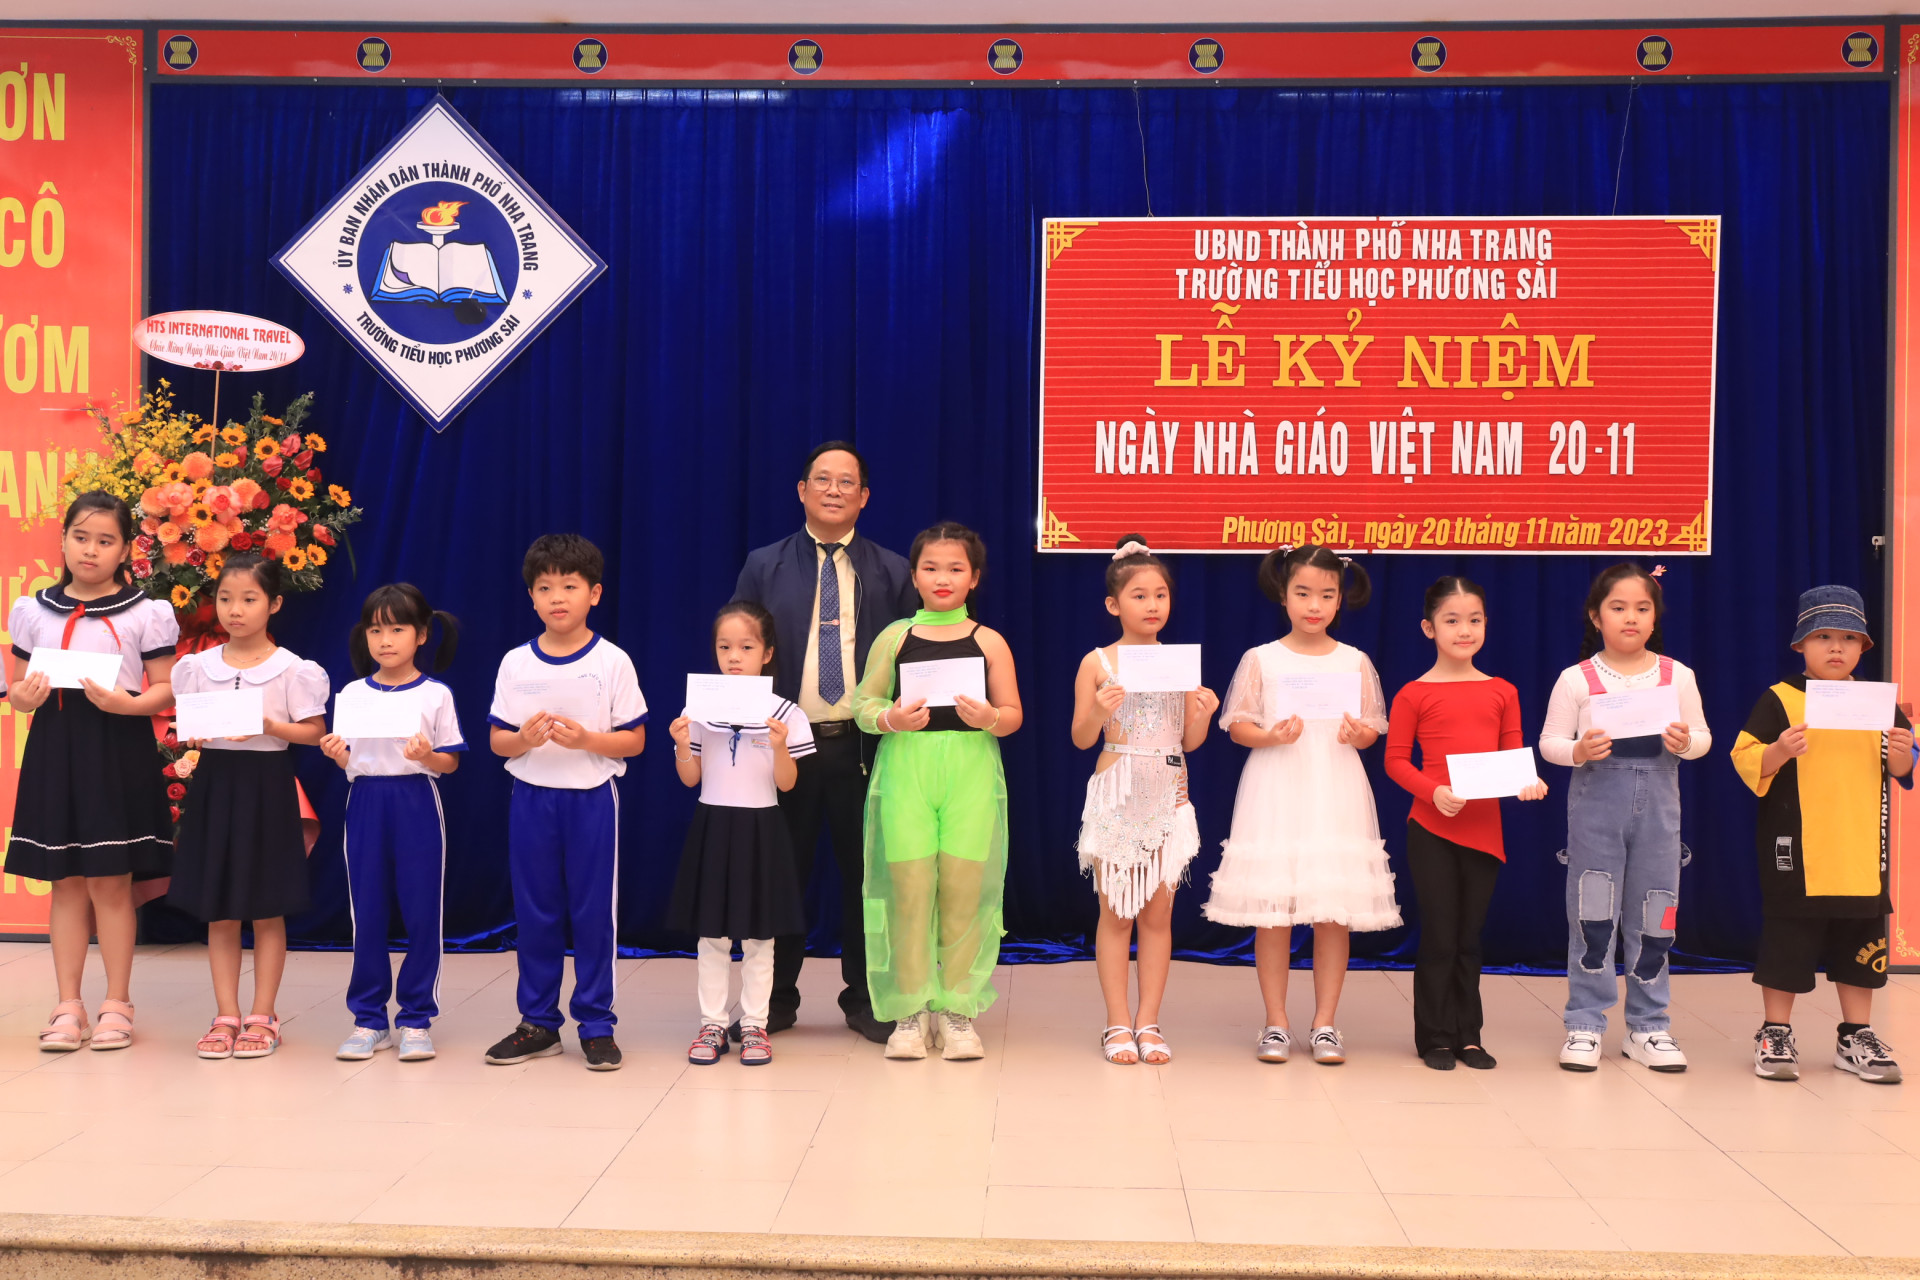 Thầy Nguyễn Thúc Hiền - Hiệu trưởng Trường Tiểu học Phương Sài trao giải Nhất cho học sinh tham gia cuộc thi Tìm kiếm tài năng.